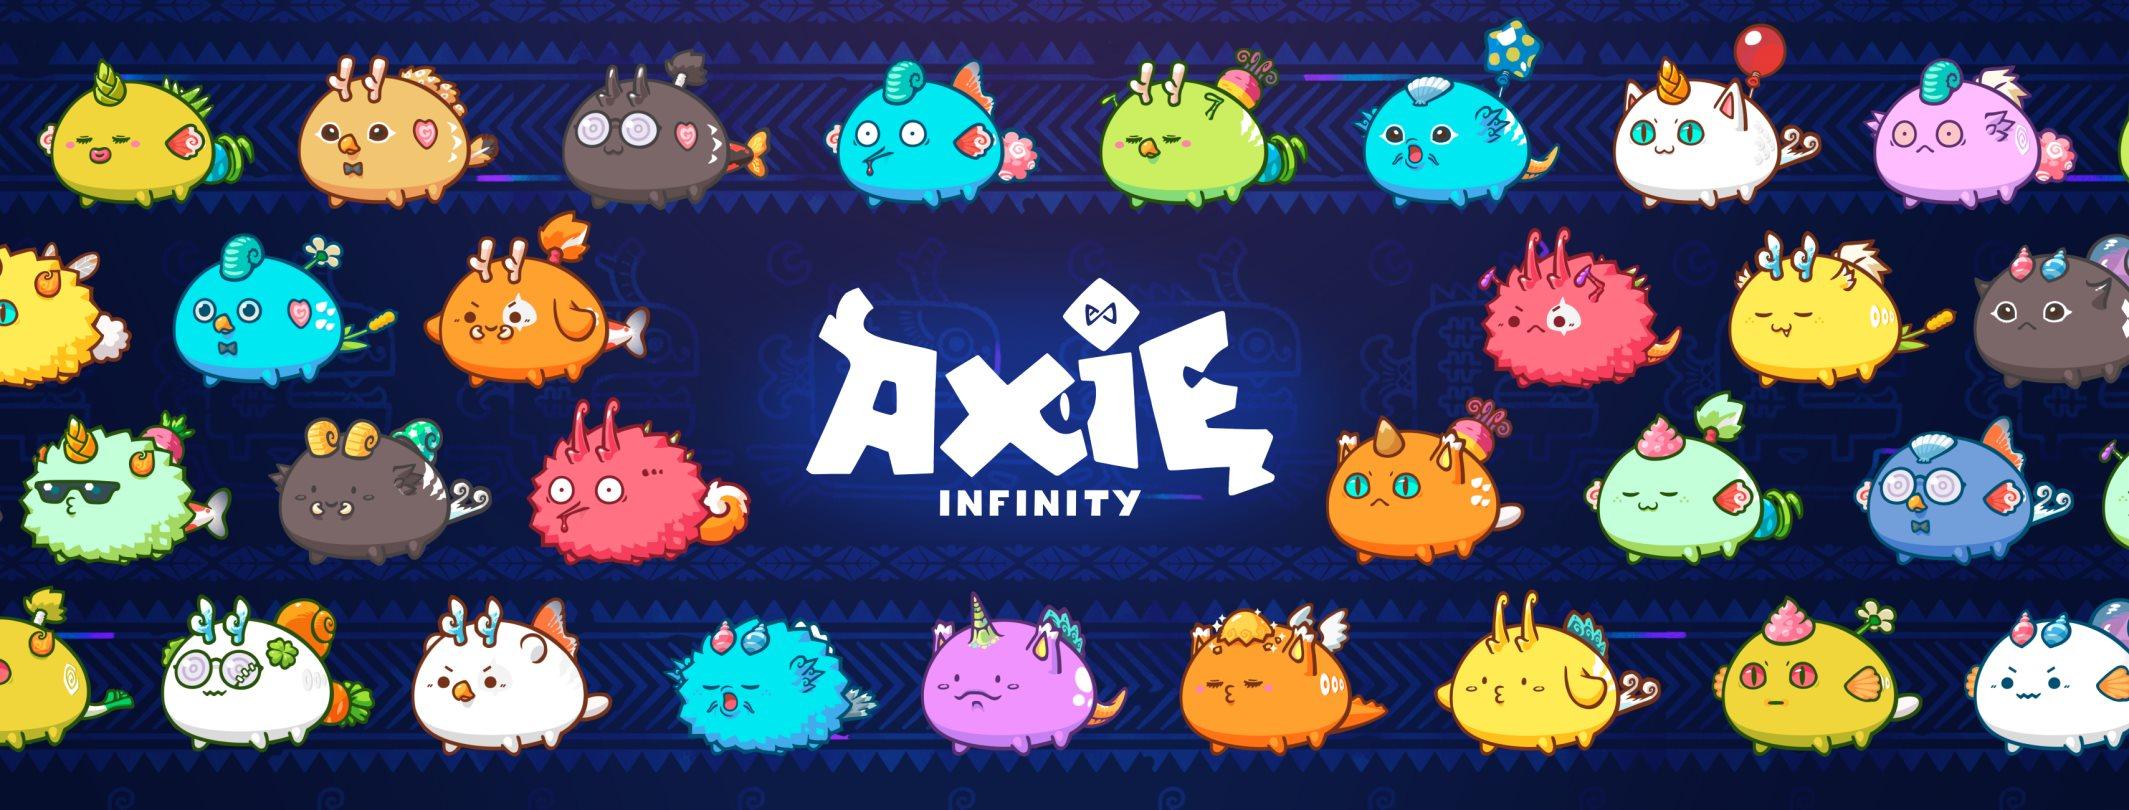 axie infinity revenue